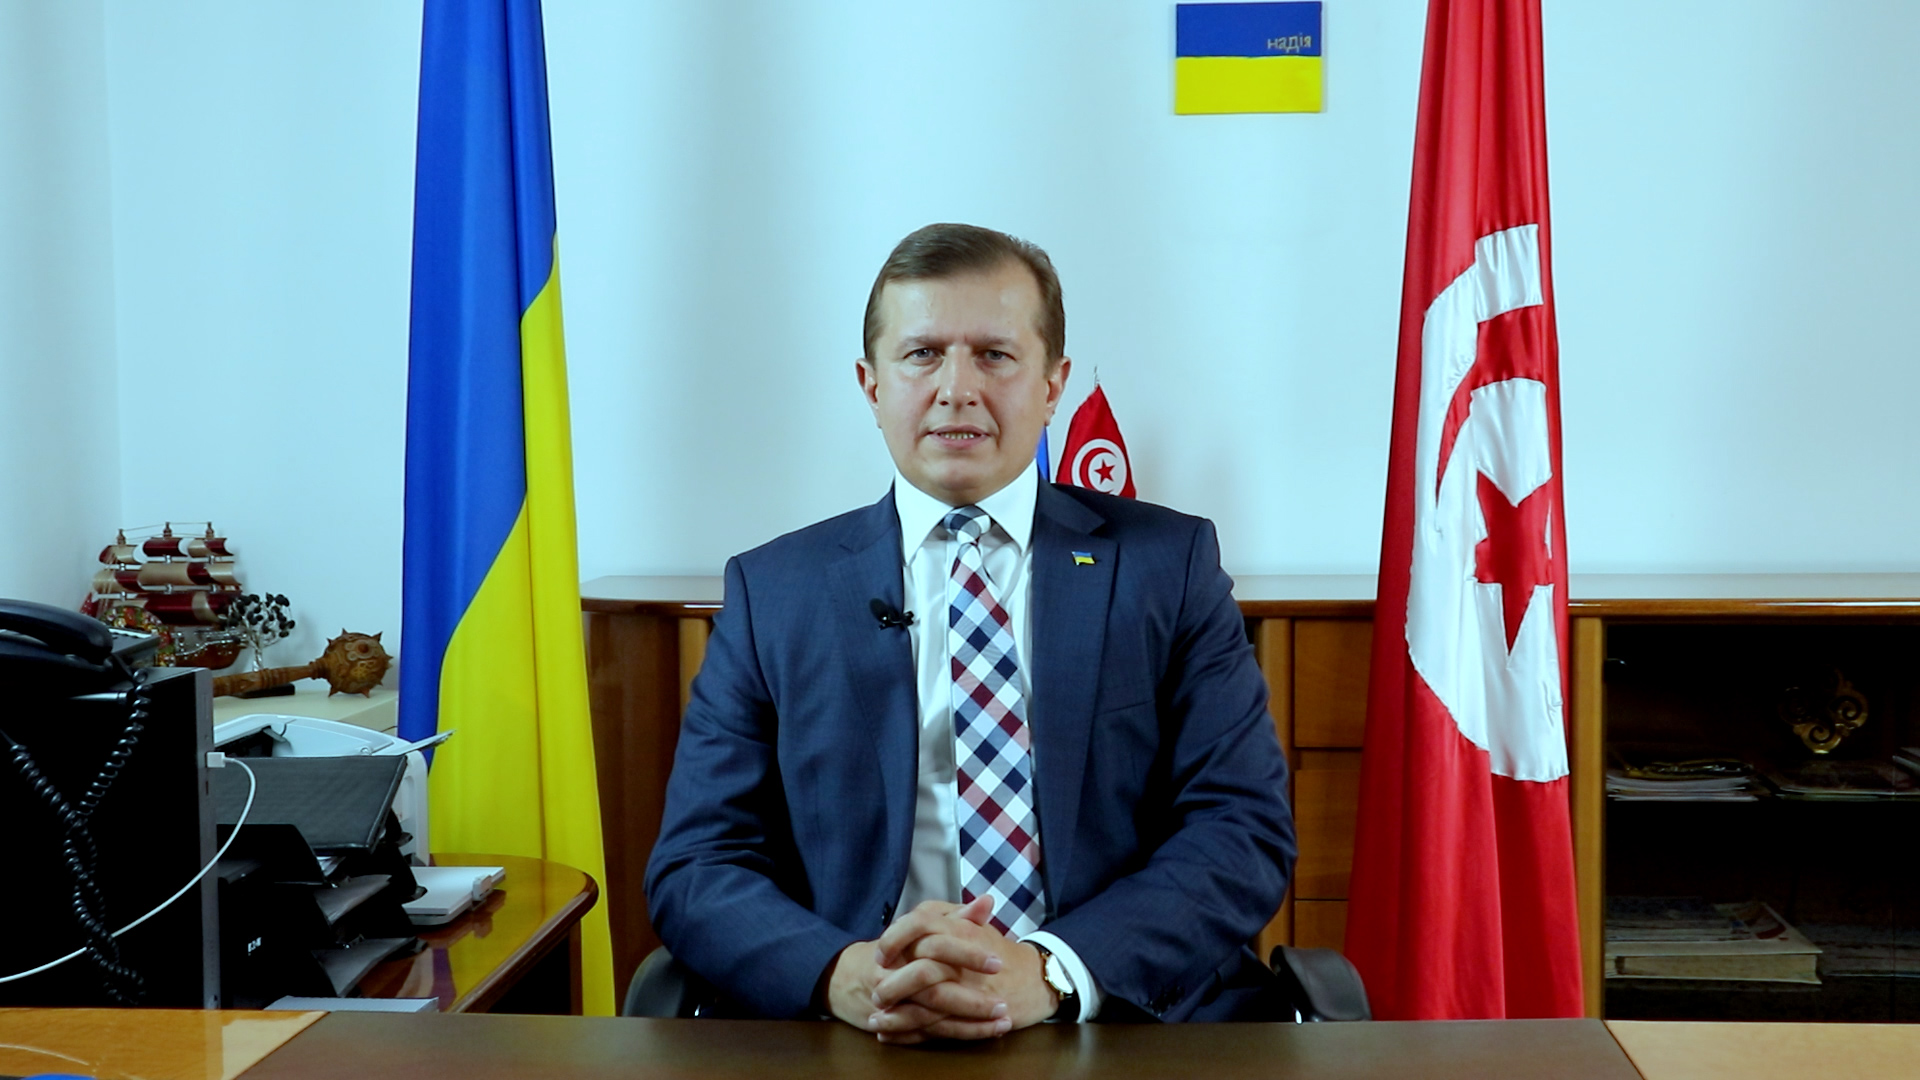 L’Ambassadeur de l’Ukraine à Tunis fait une promesse aux étudiants tunisiens (Vidéo)